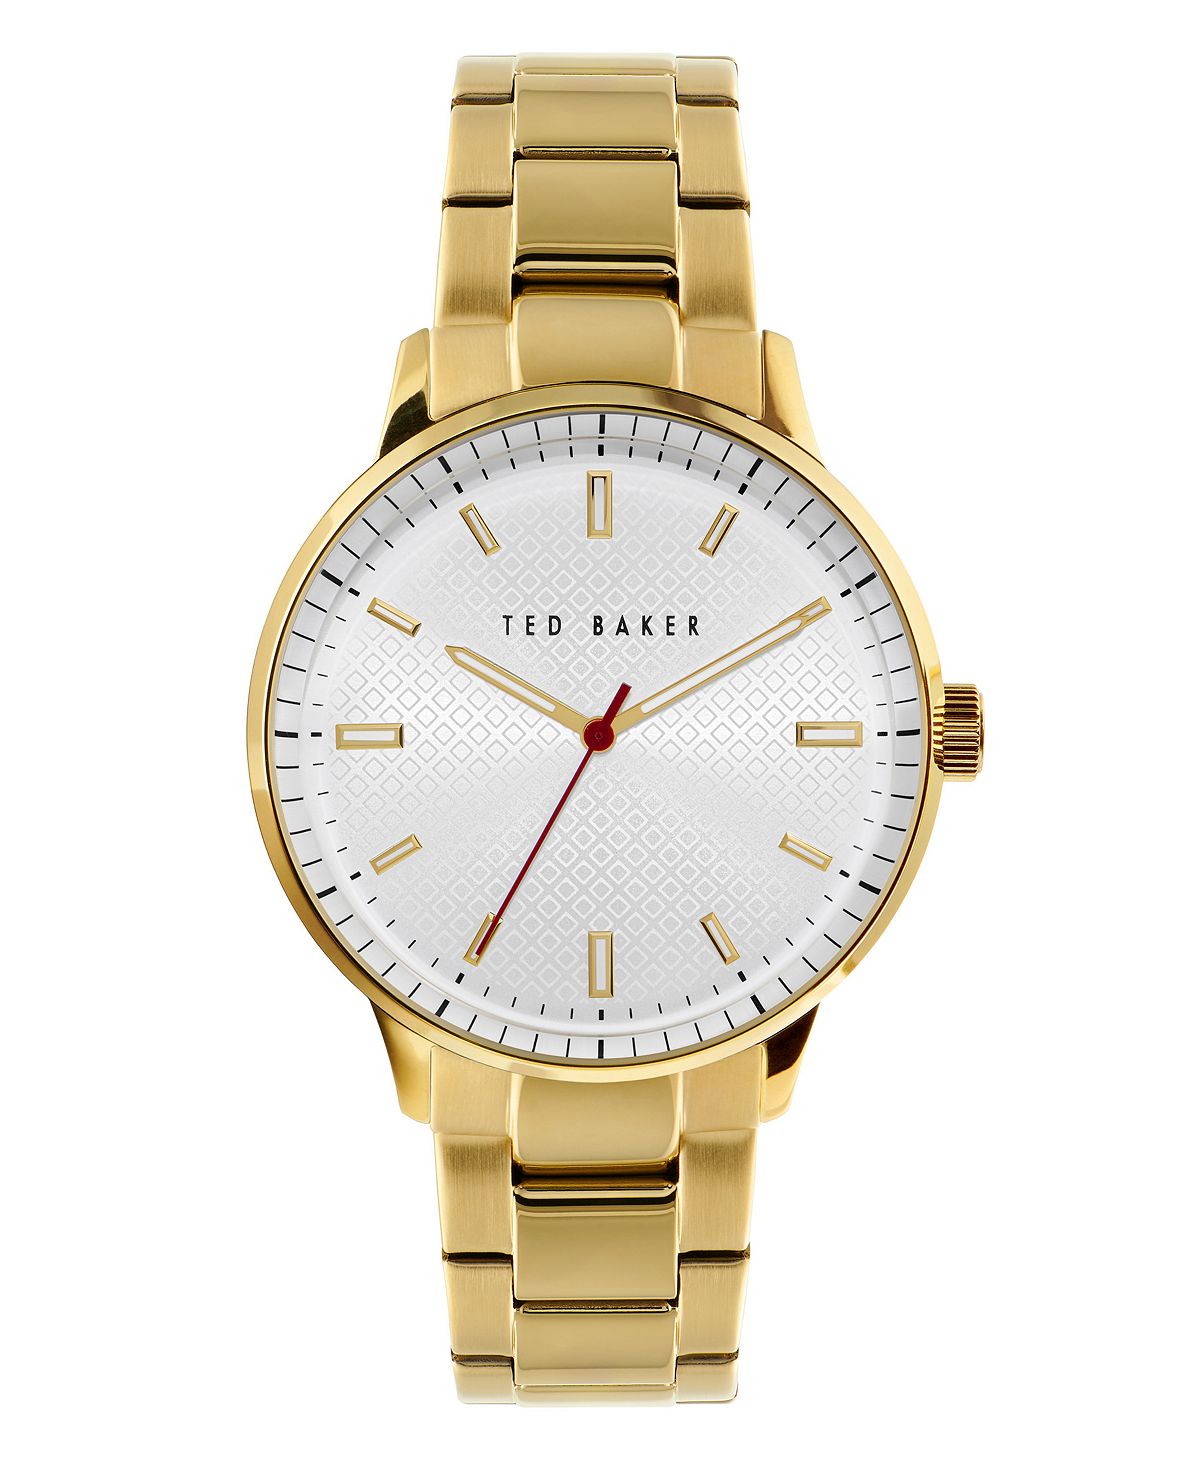 Мужские часы Cosmop с золотистым браслетом из нержавеющей стали, 42 мм Ted Baker женские часы maiisie серебристого цвета с браслетом из нержавеющей стали 28 мм ted baker